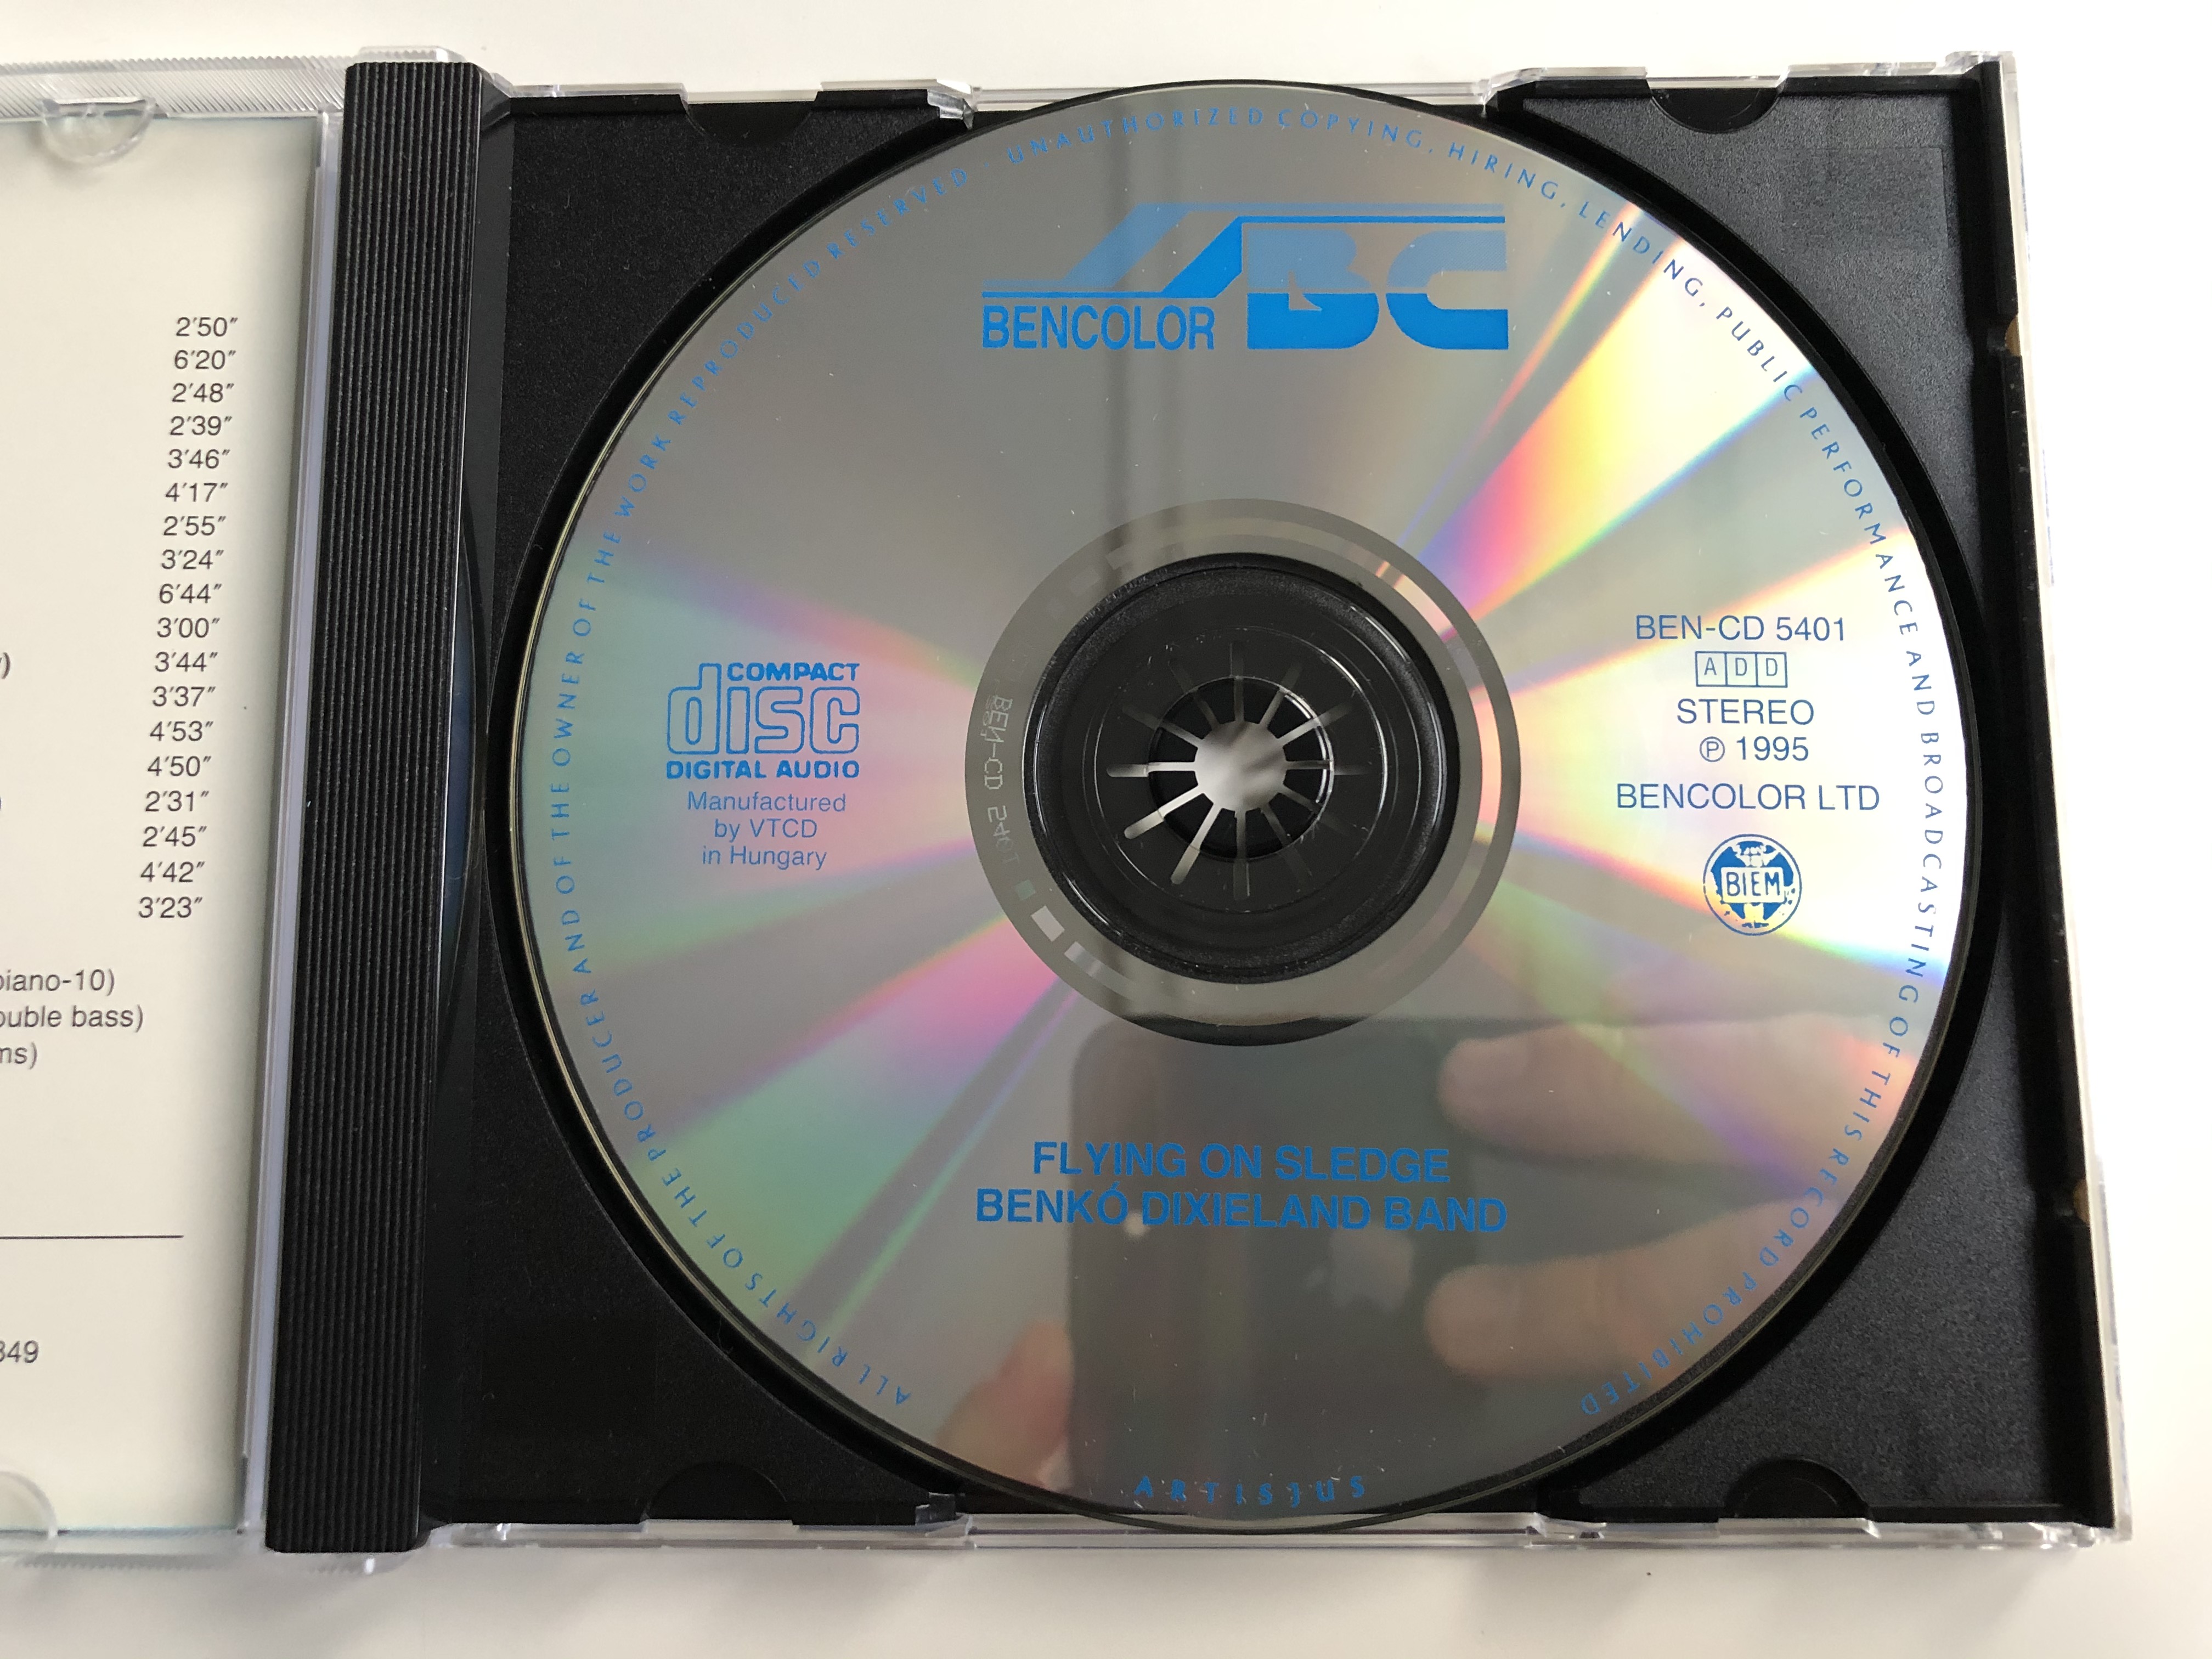 benk-dixieland-hungary-band-flying-on-sledge-bencolor-audio-cd-1995-stereo-ben-cd-5401-3-.jpg